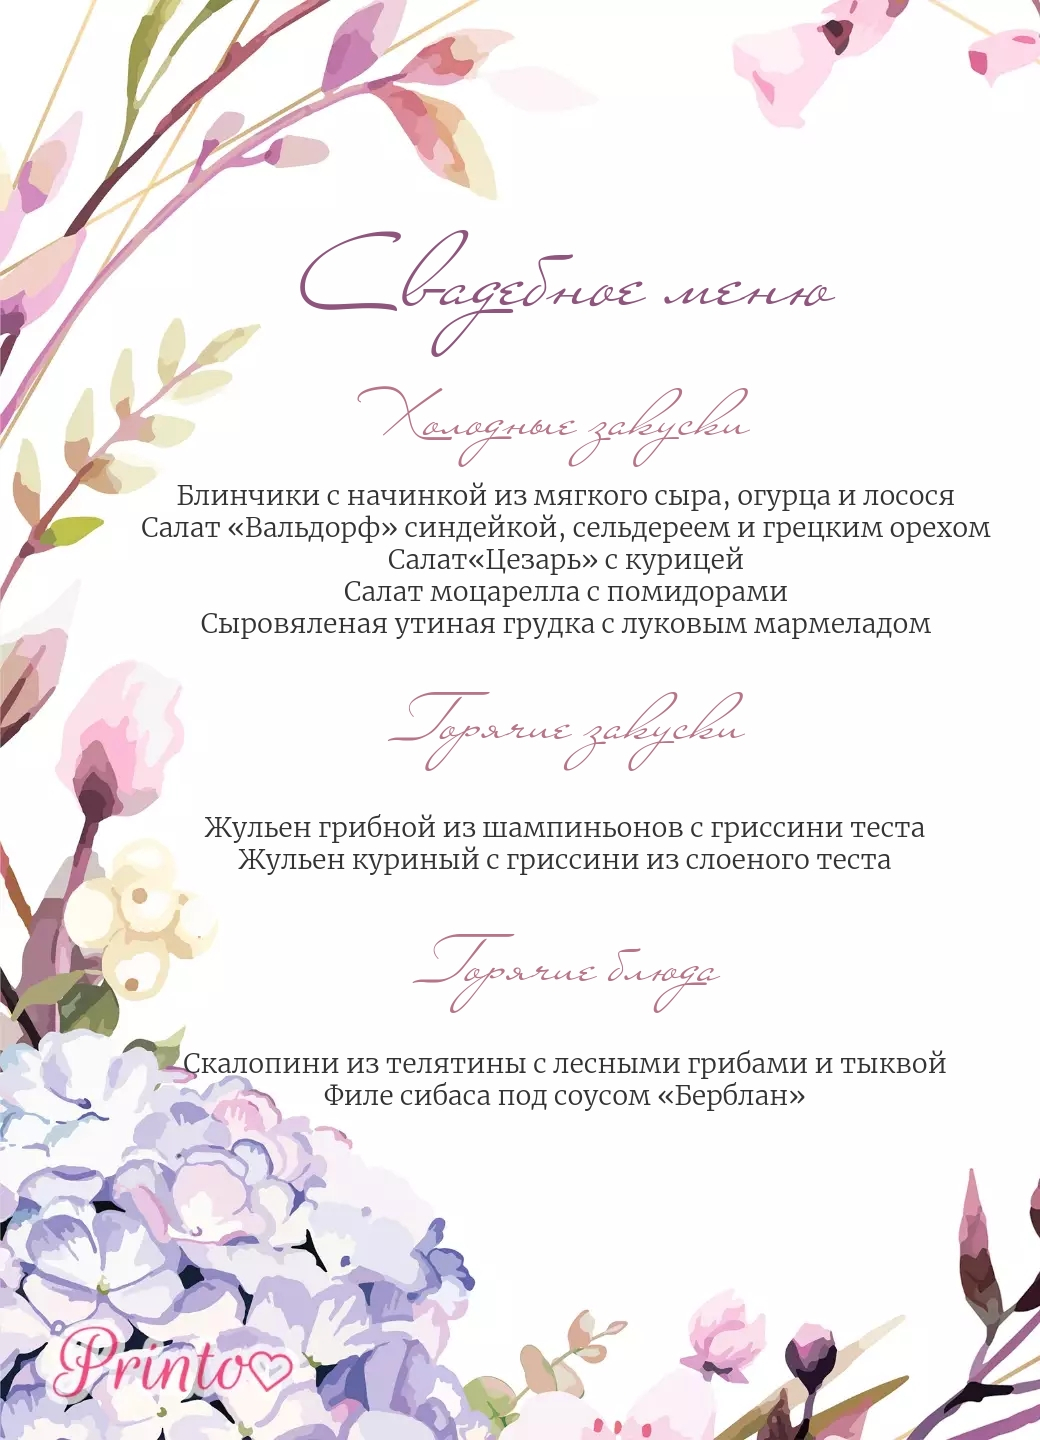 Шаблон свадебного меню "Новелла гортензии"